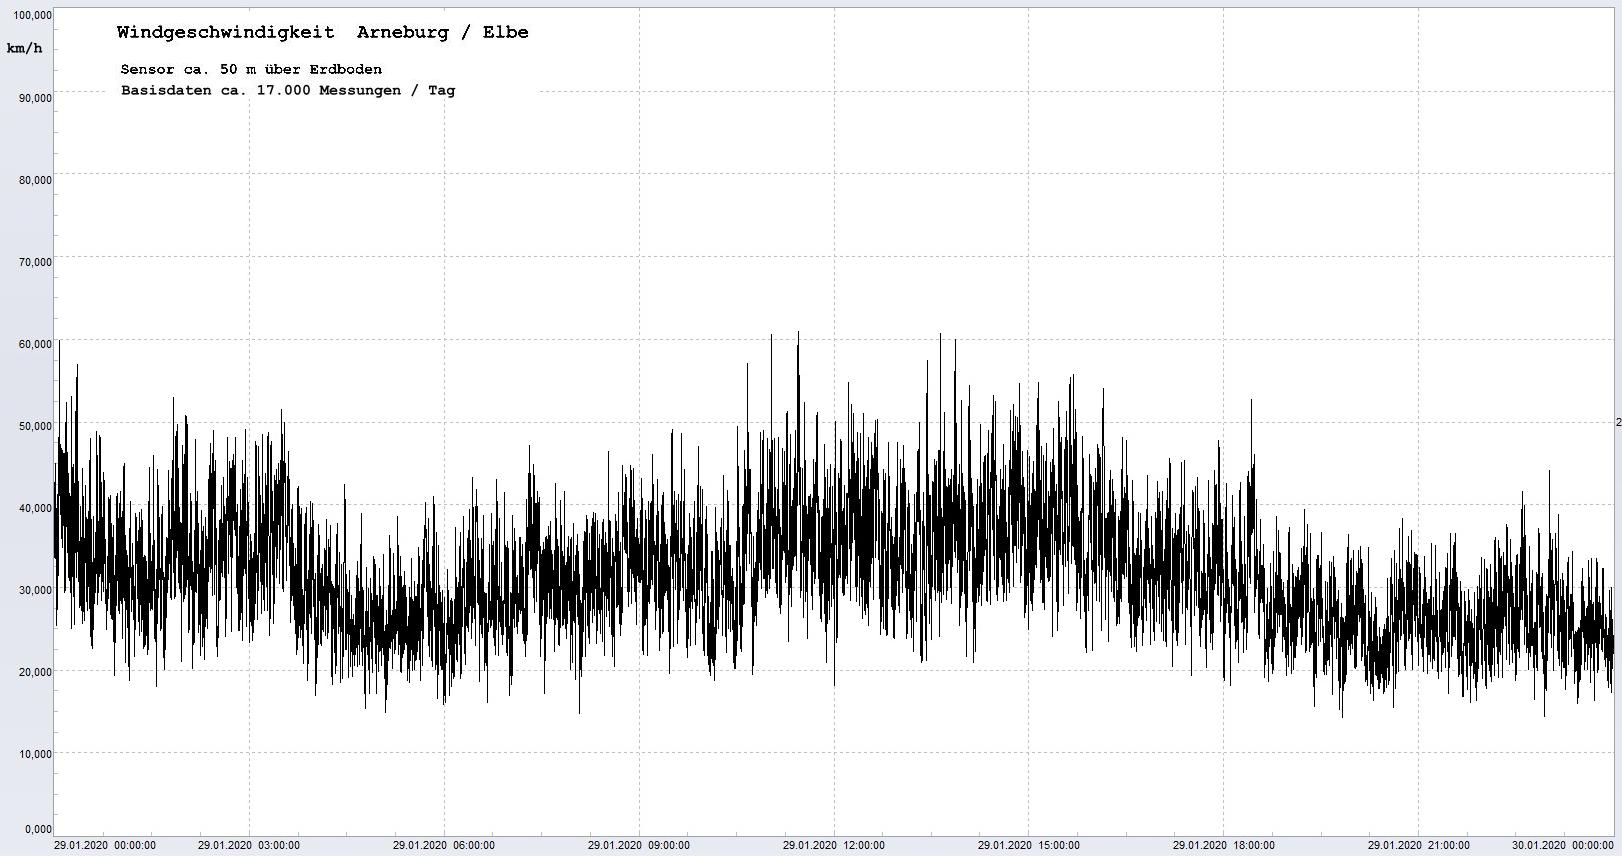 Arneburg Winddaten 29.01.2020, 
  Sensor auf Gebäude, ca. 50 m über Erdboden, 5s-Aufzeichnung